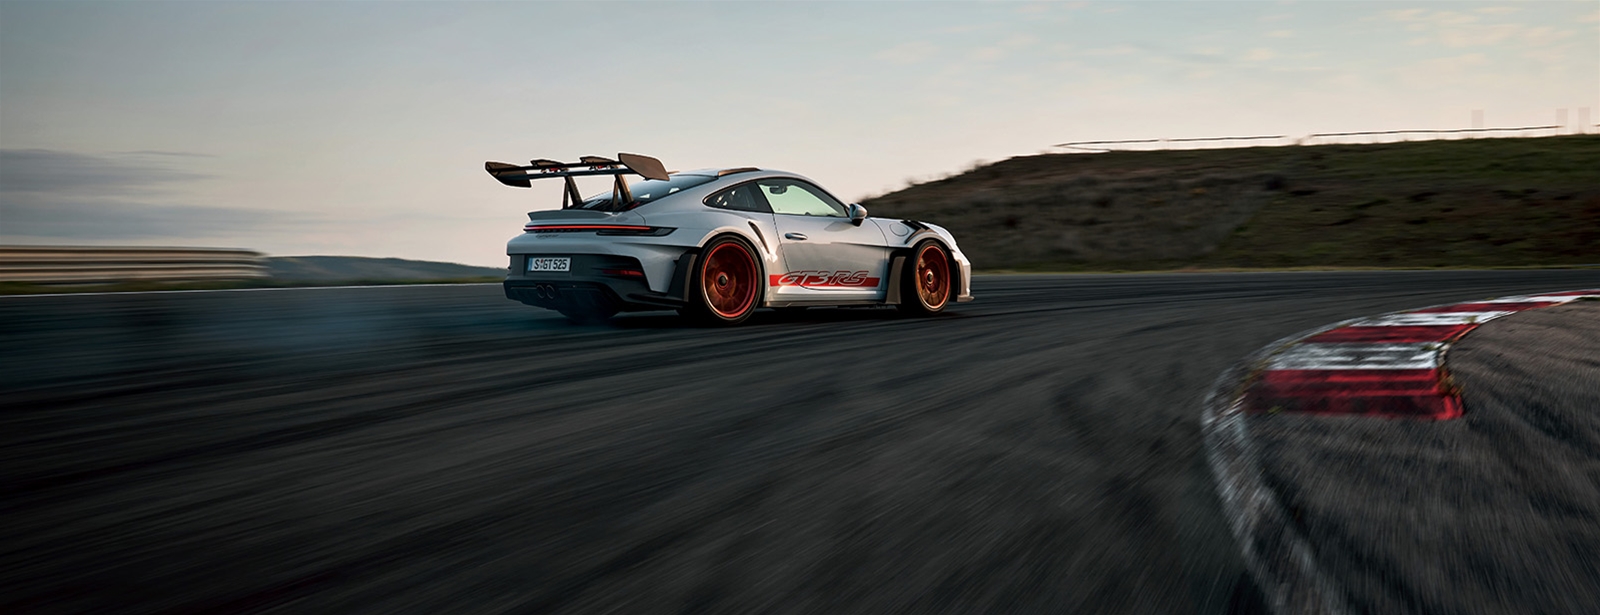 De nieuwe Porsche 911 GT3 RS: gebouwd om maximaal te presteren.